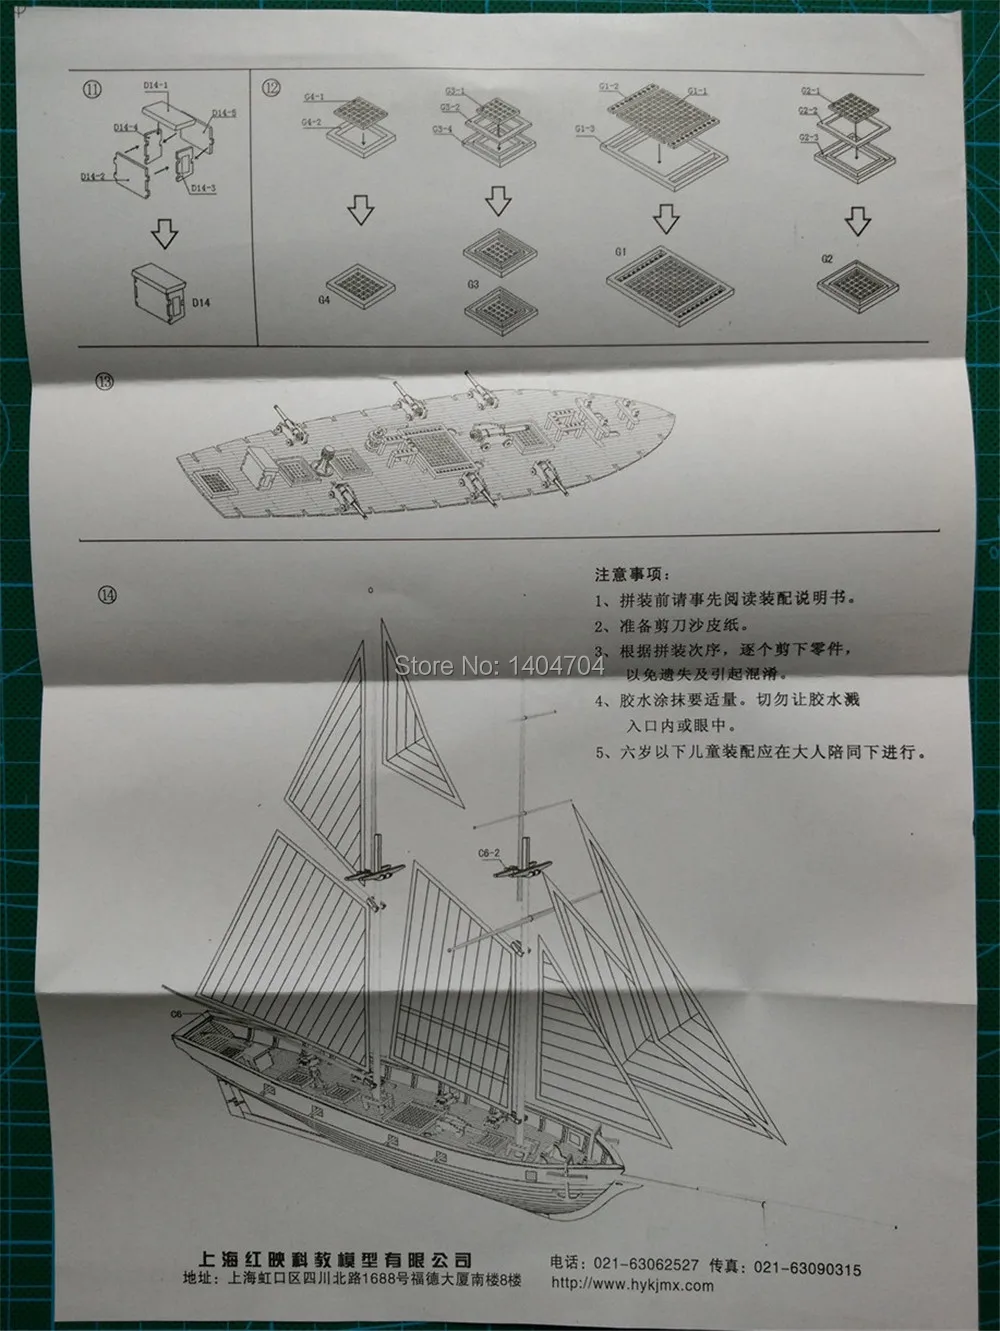 NIDALE модель лазерная резка деревянная модель корабля наборы Halko 1840 Западный парусник DIY научная копия набор(бесплатно 2 шт бочки